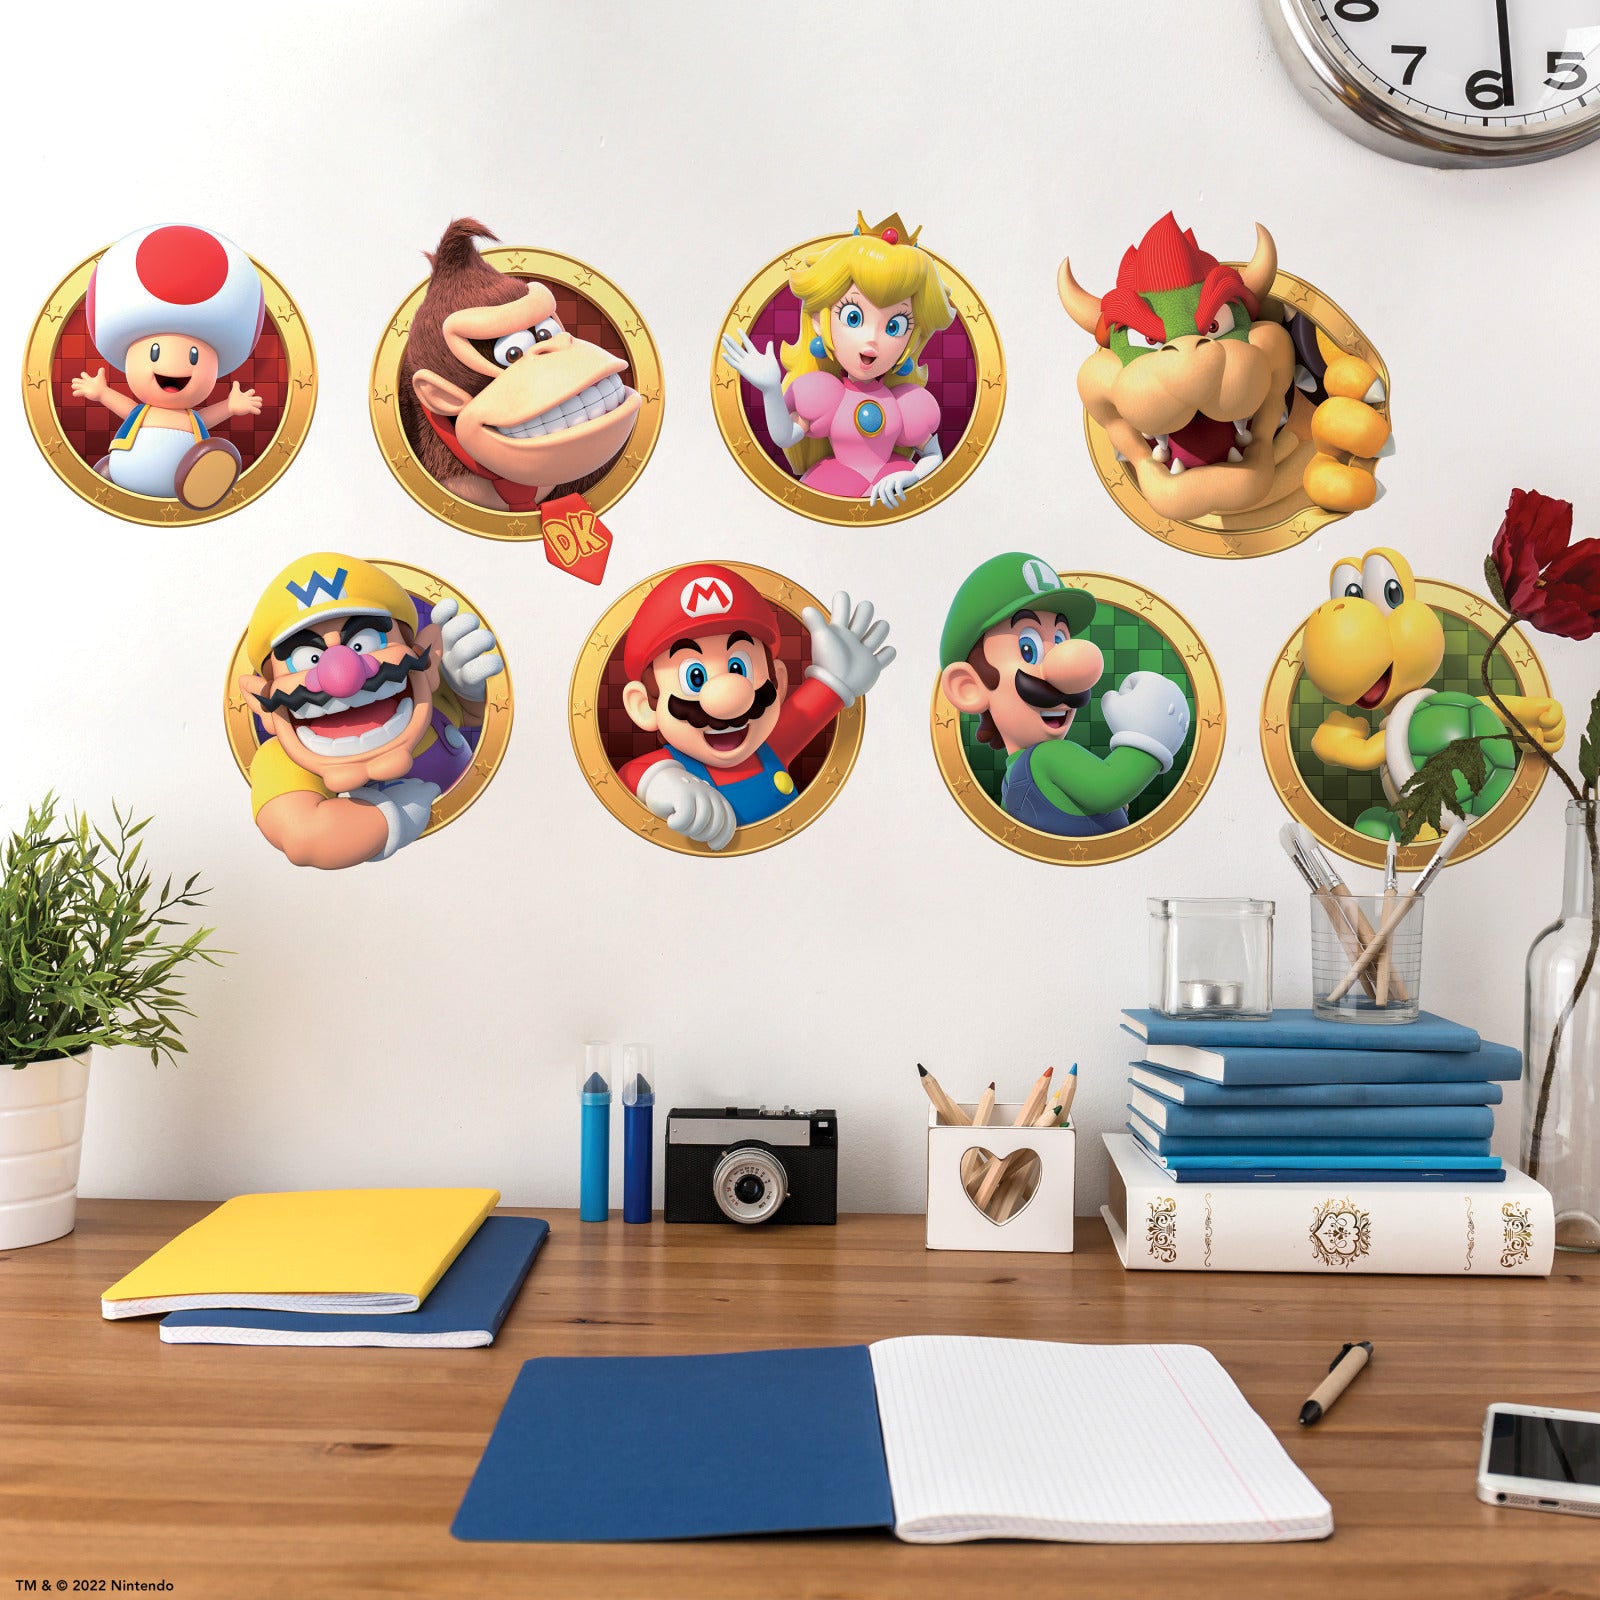 Super Mario Wall Sticker Decals